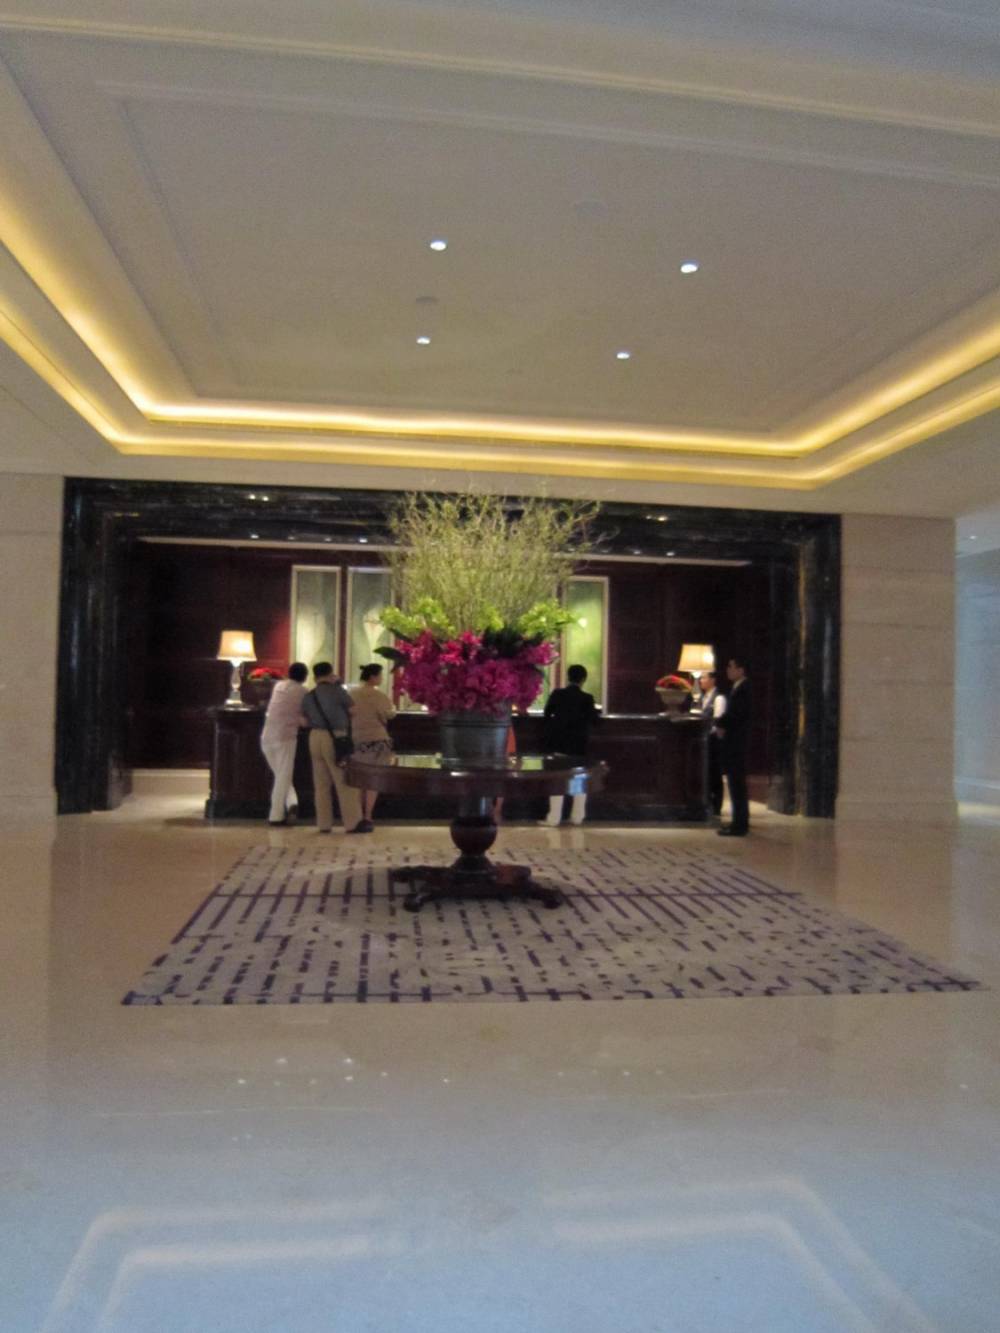 上海华尔道夫酒店(The Waldorf Astoria OnTheBund)(HBA)10.9第10页更新_14.JPG